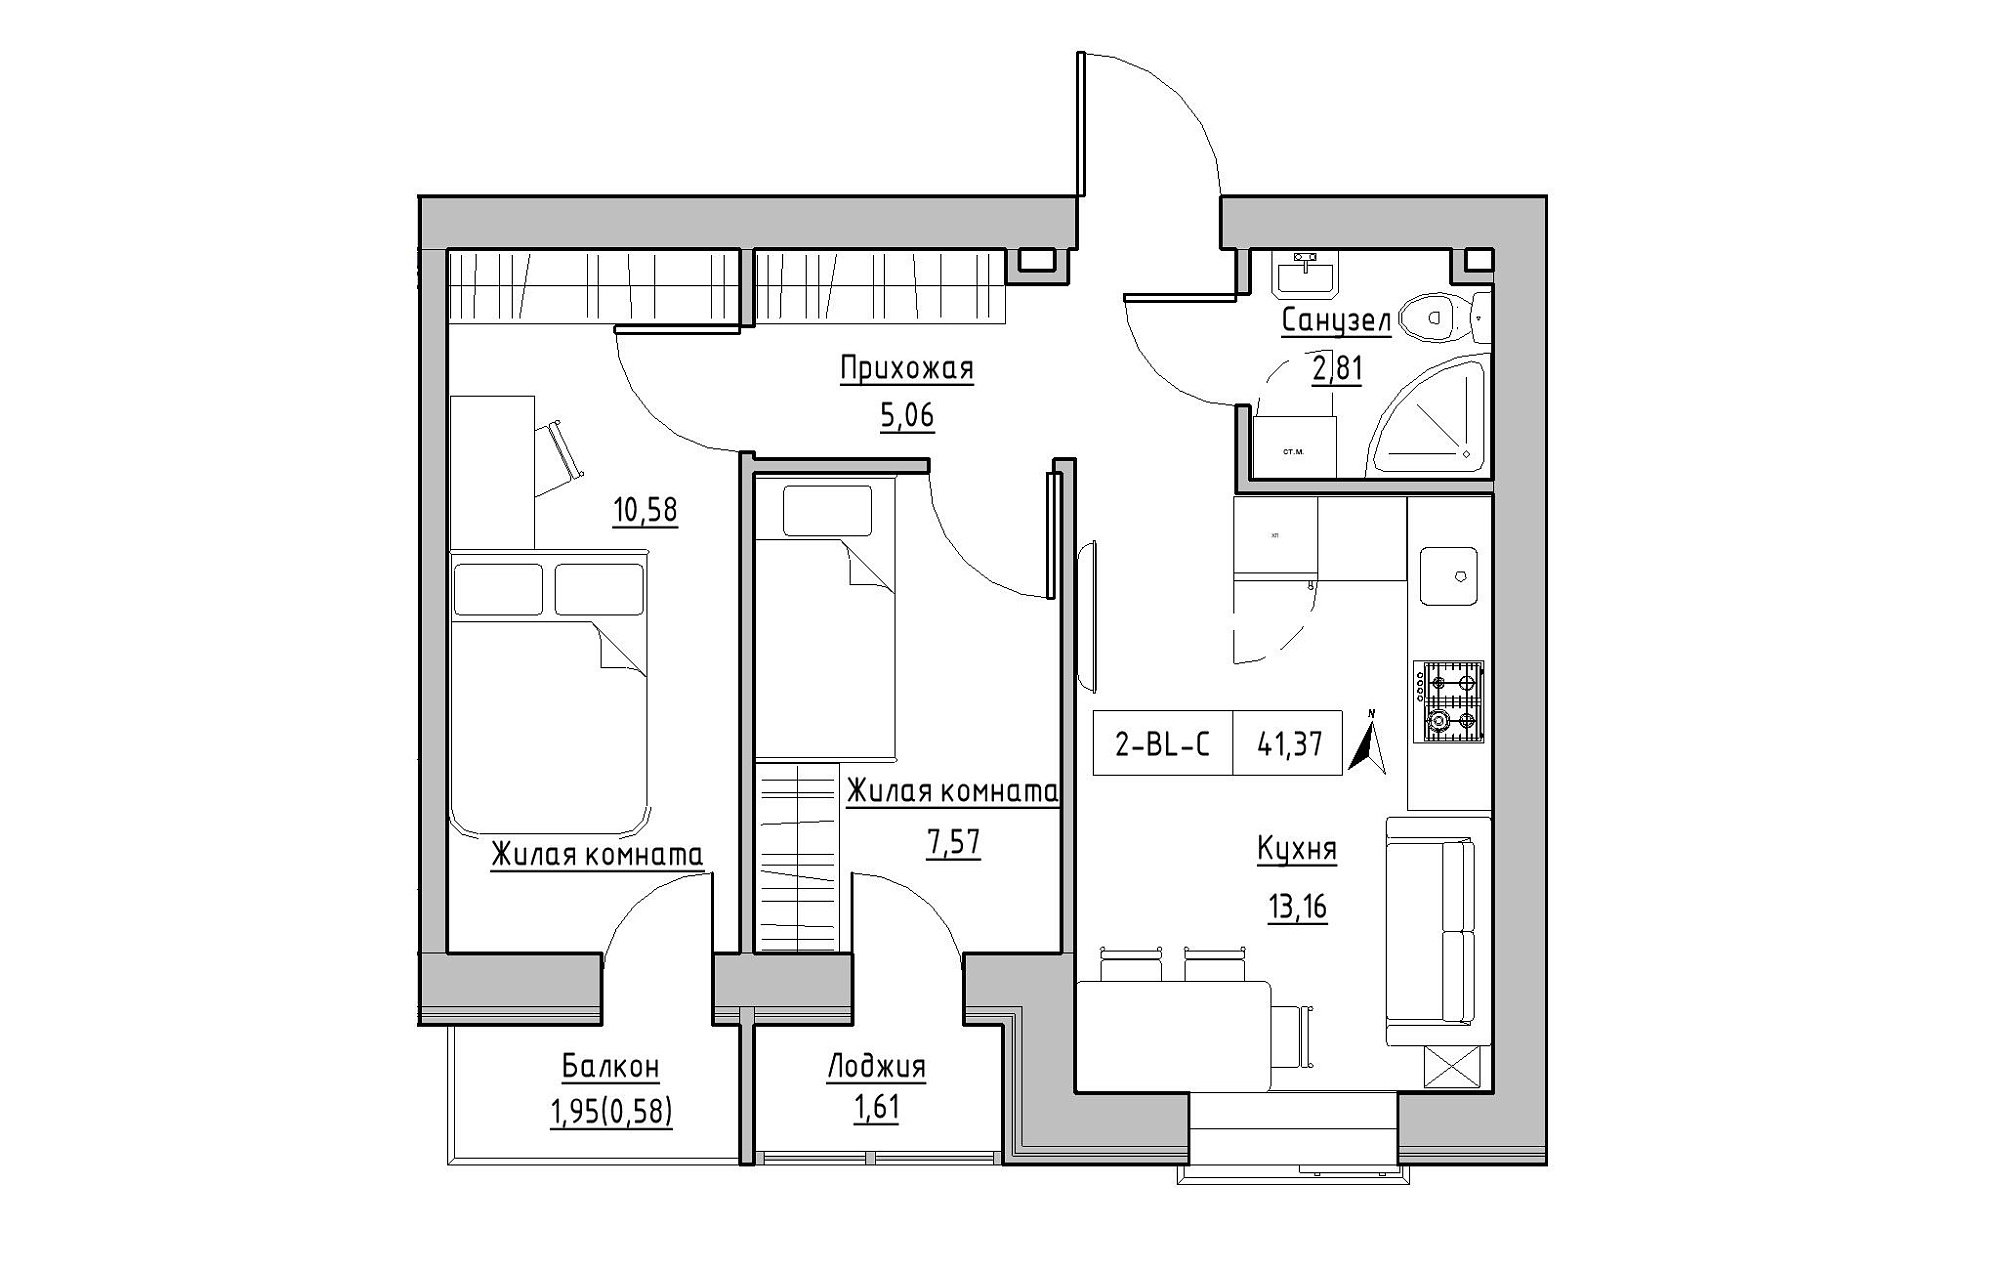 Планування 2-к квартира площею 41.37м2, KS-019-04/0011.